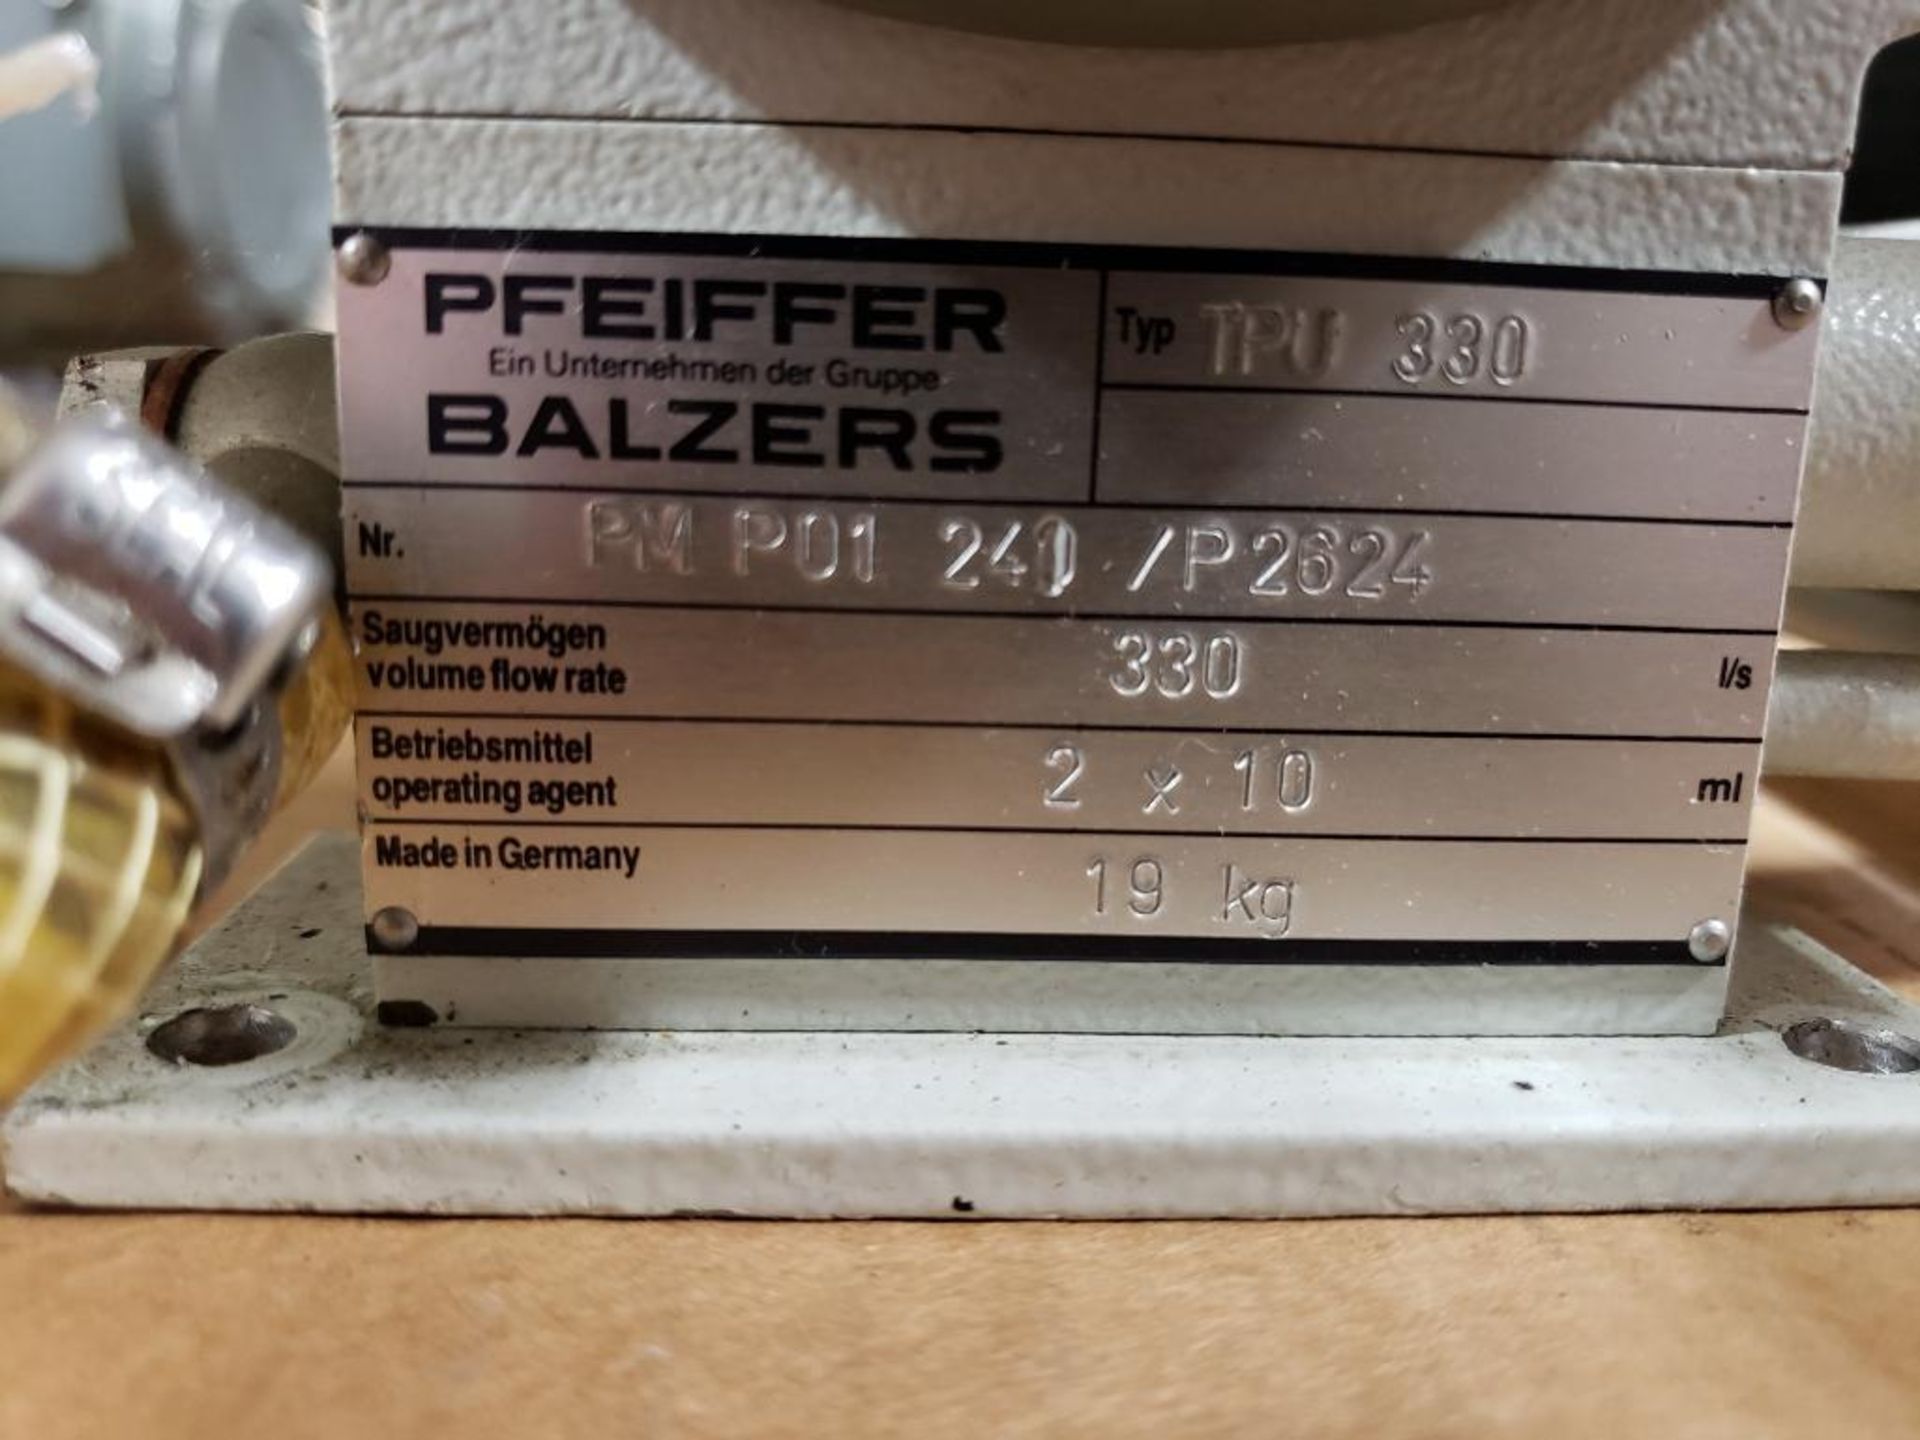 Pfeiffer Balzers TPU 330 turbo vacuum pump. PM-P01-240/P2624. - Image 5 of 7